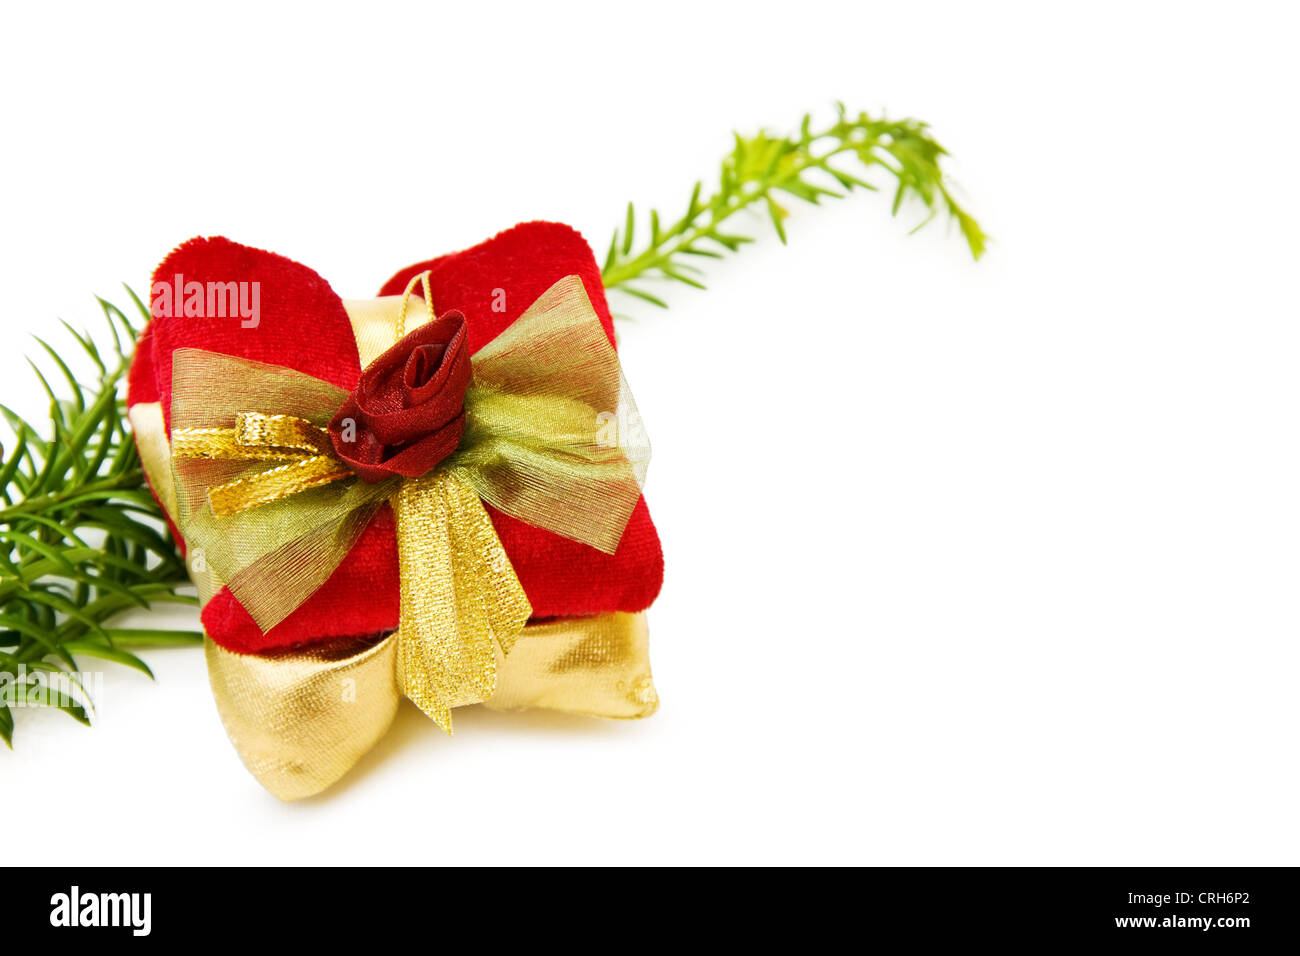 Célébrer Noël avec traditionnel pin arbre branche et vintage décoration cadeaux. Isolé sur fond blanc. Banque D'Images